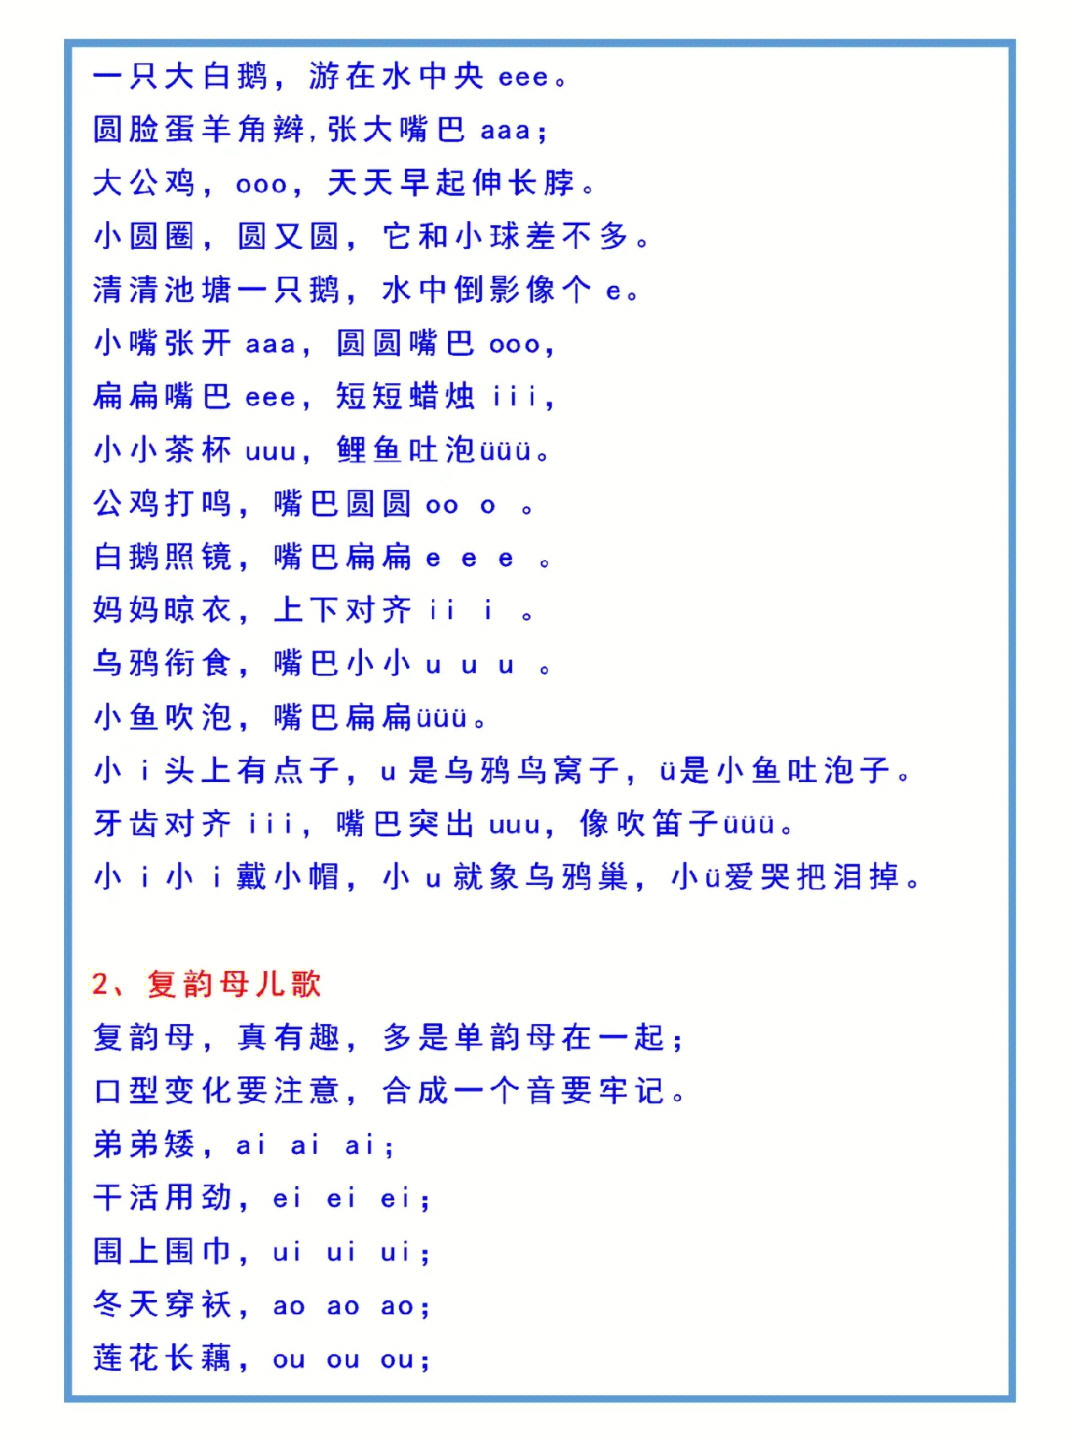 汉语拼音的正确发音方法编成了28首儿歌